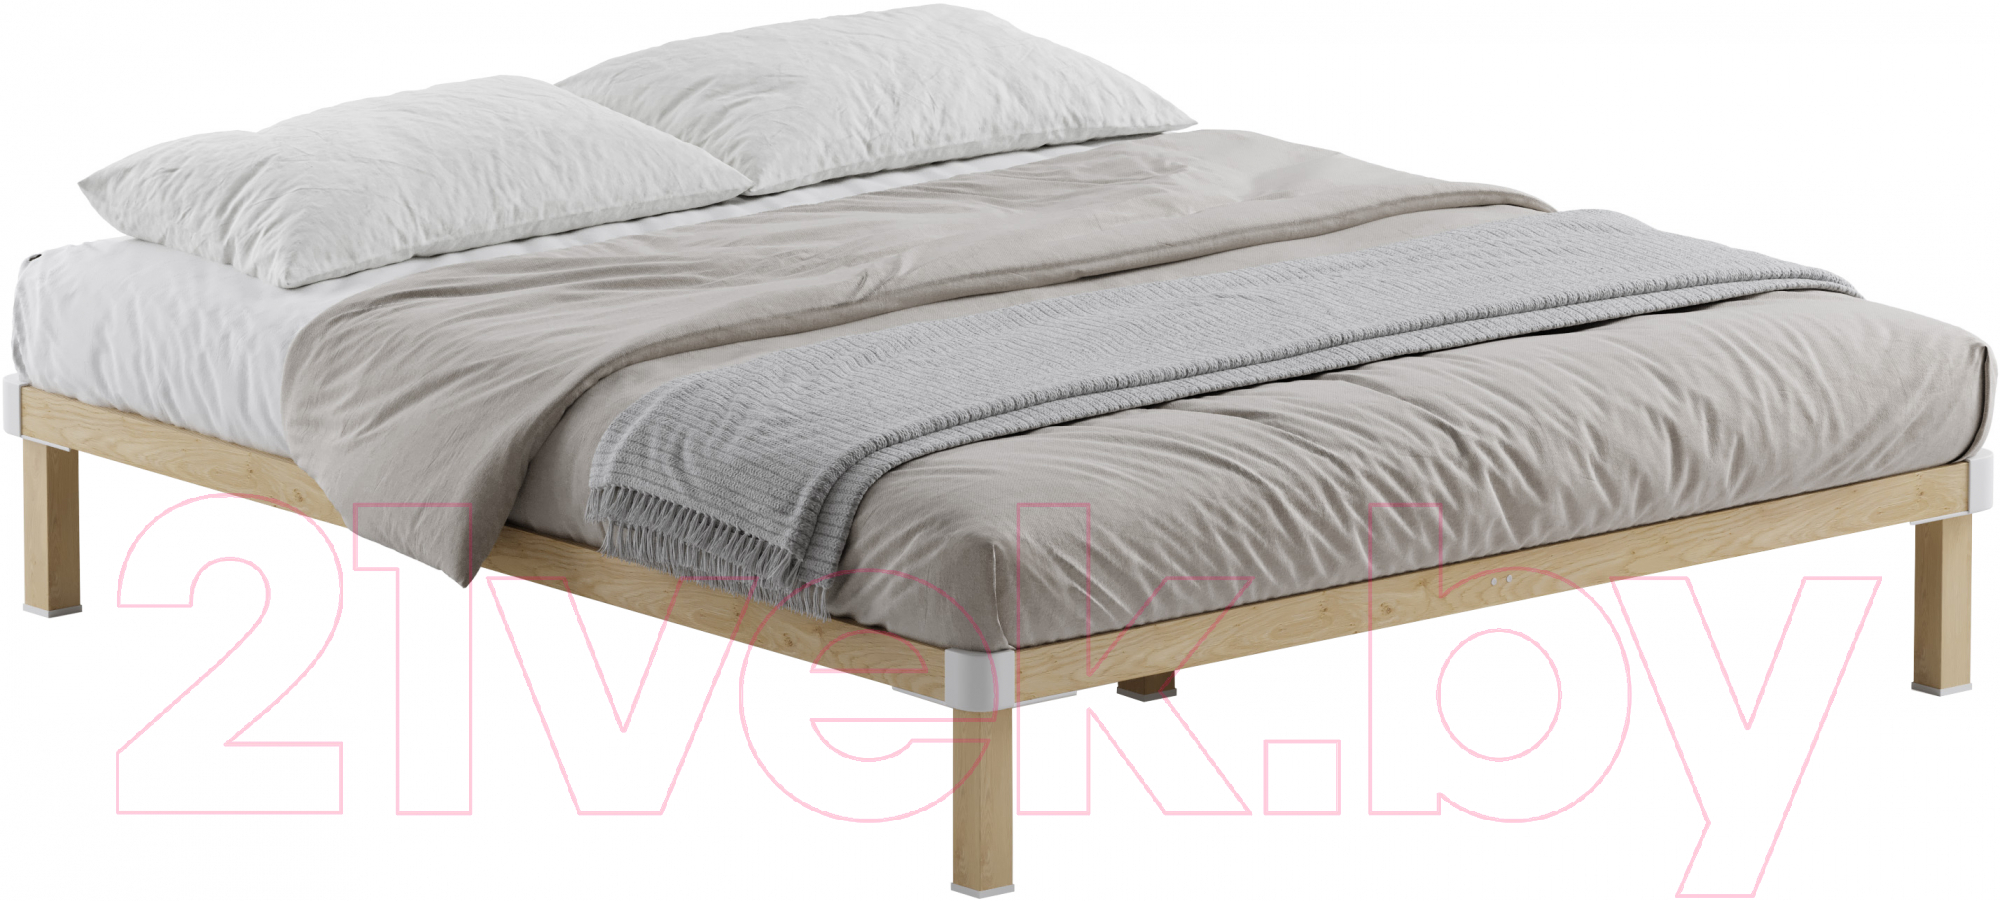 Двуспальная кровать Домаклево Канапе 2 180x200